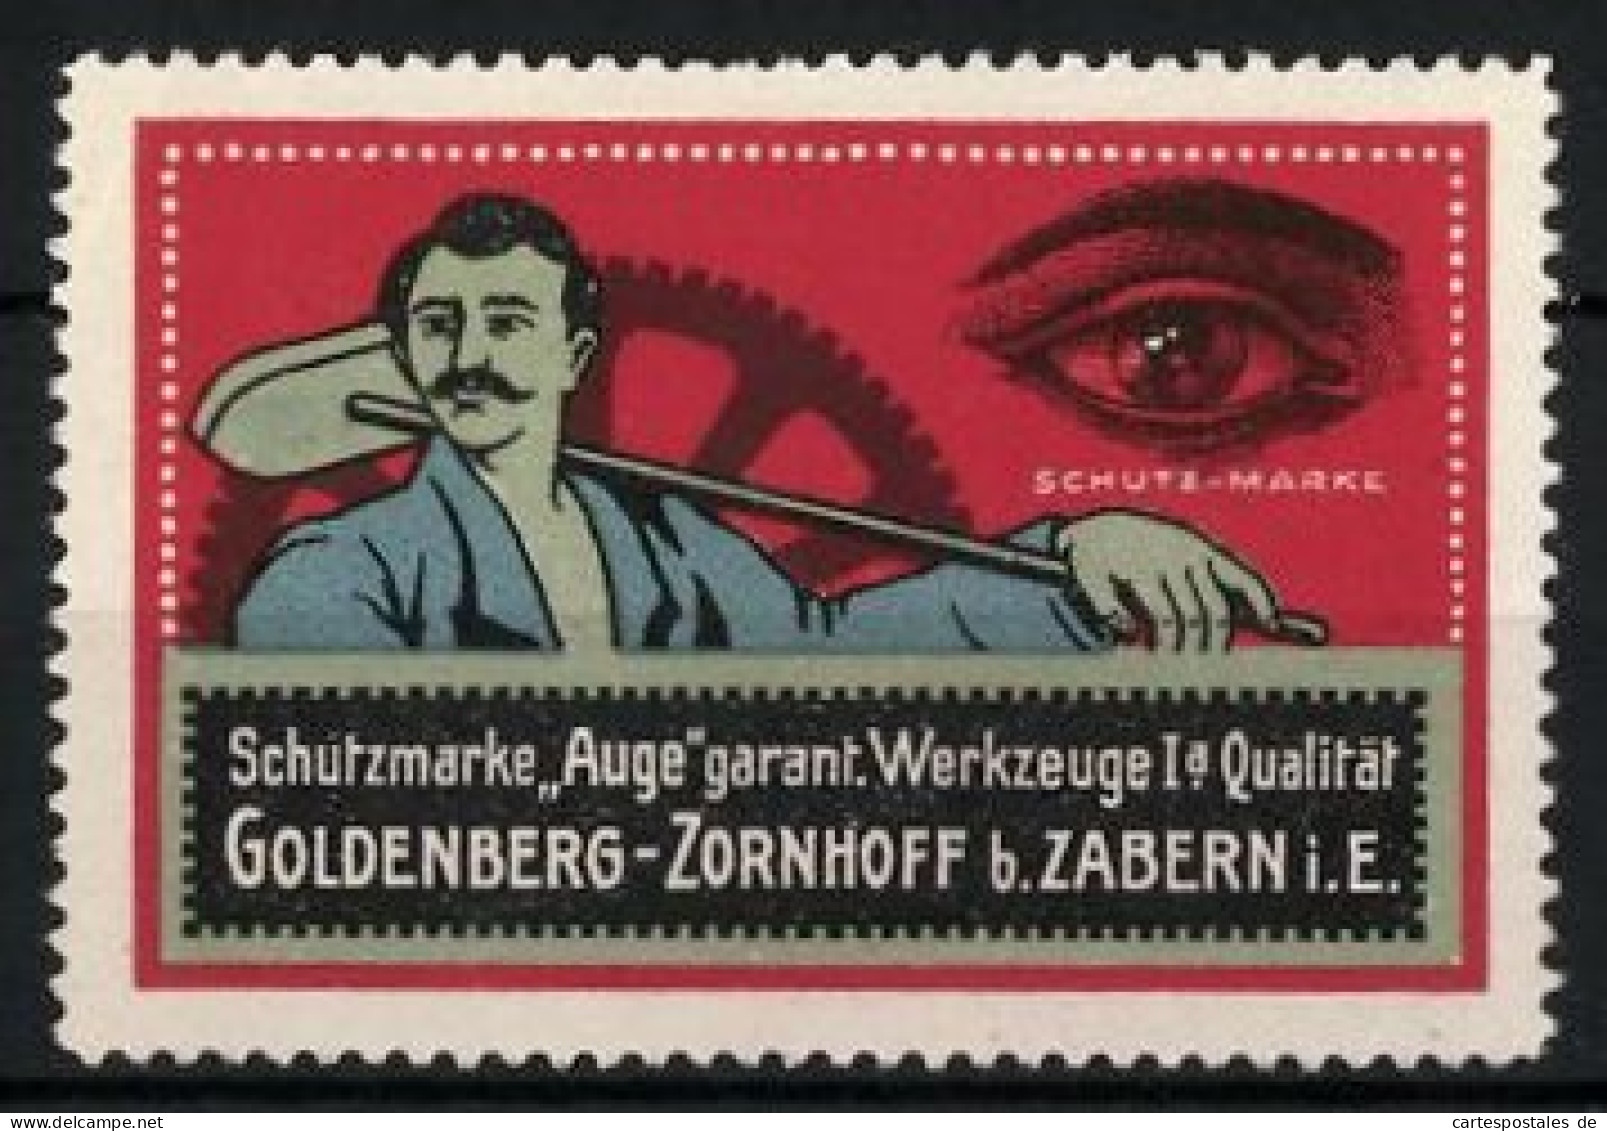 Reklamemarke Werkzeugfabrik Goldenberg-Zornhoff, Zabern I. E., Schutzmarke Auge, Werkzeuge Mit Qualität  - Erinofilia